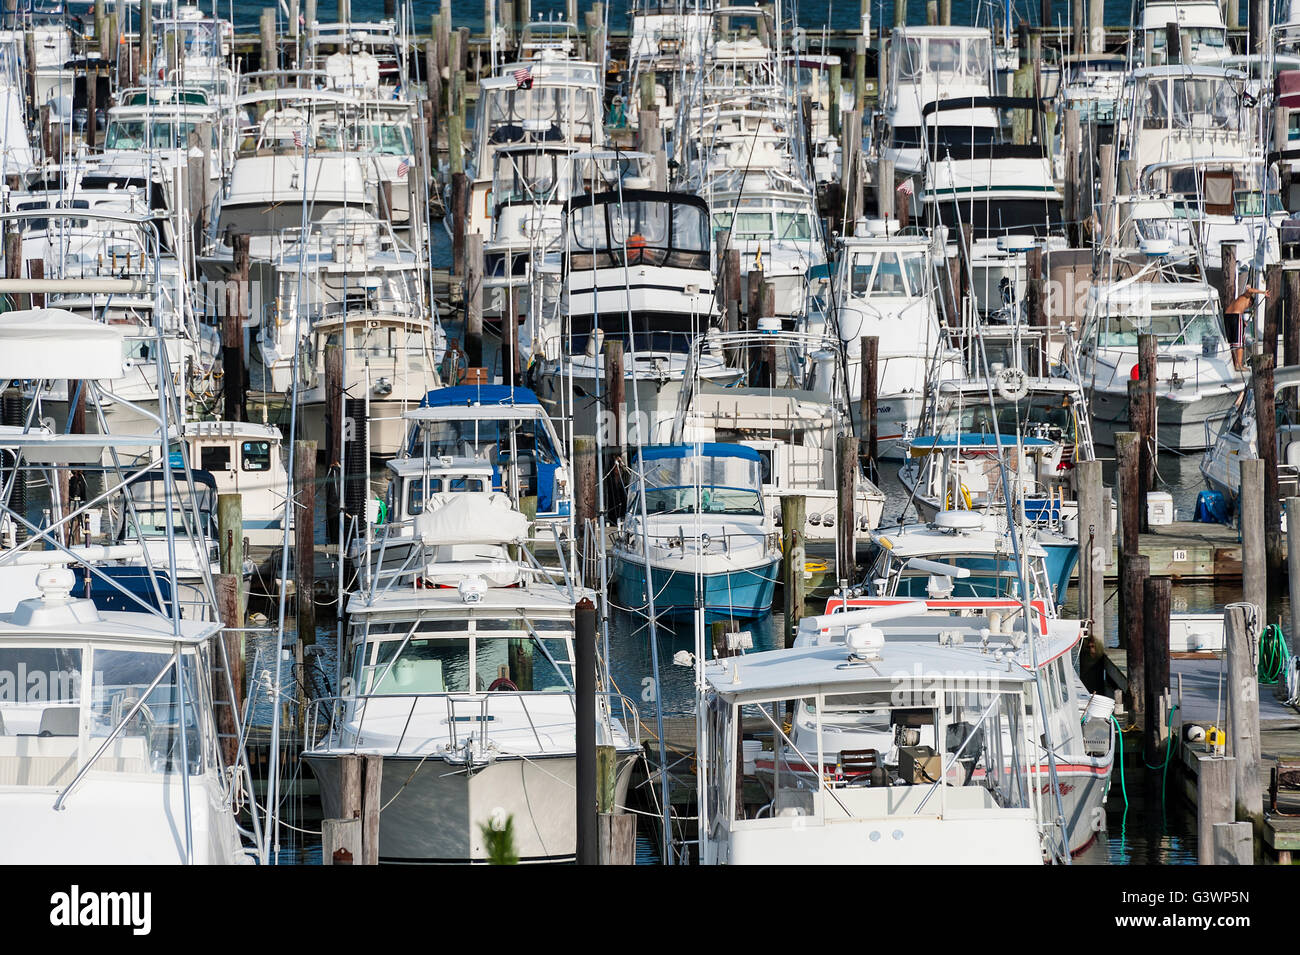 Boats docked in marina, Cape May, New Jersey, USA Stock Photo